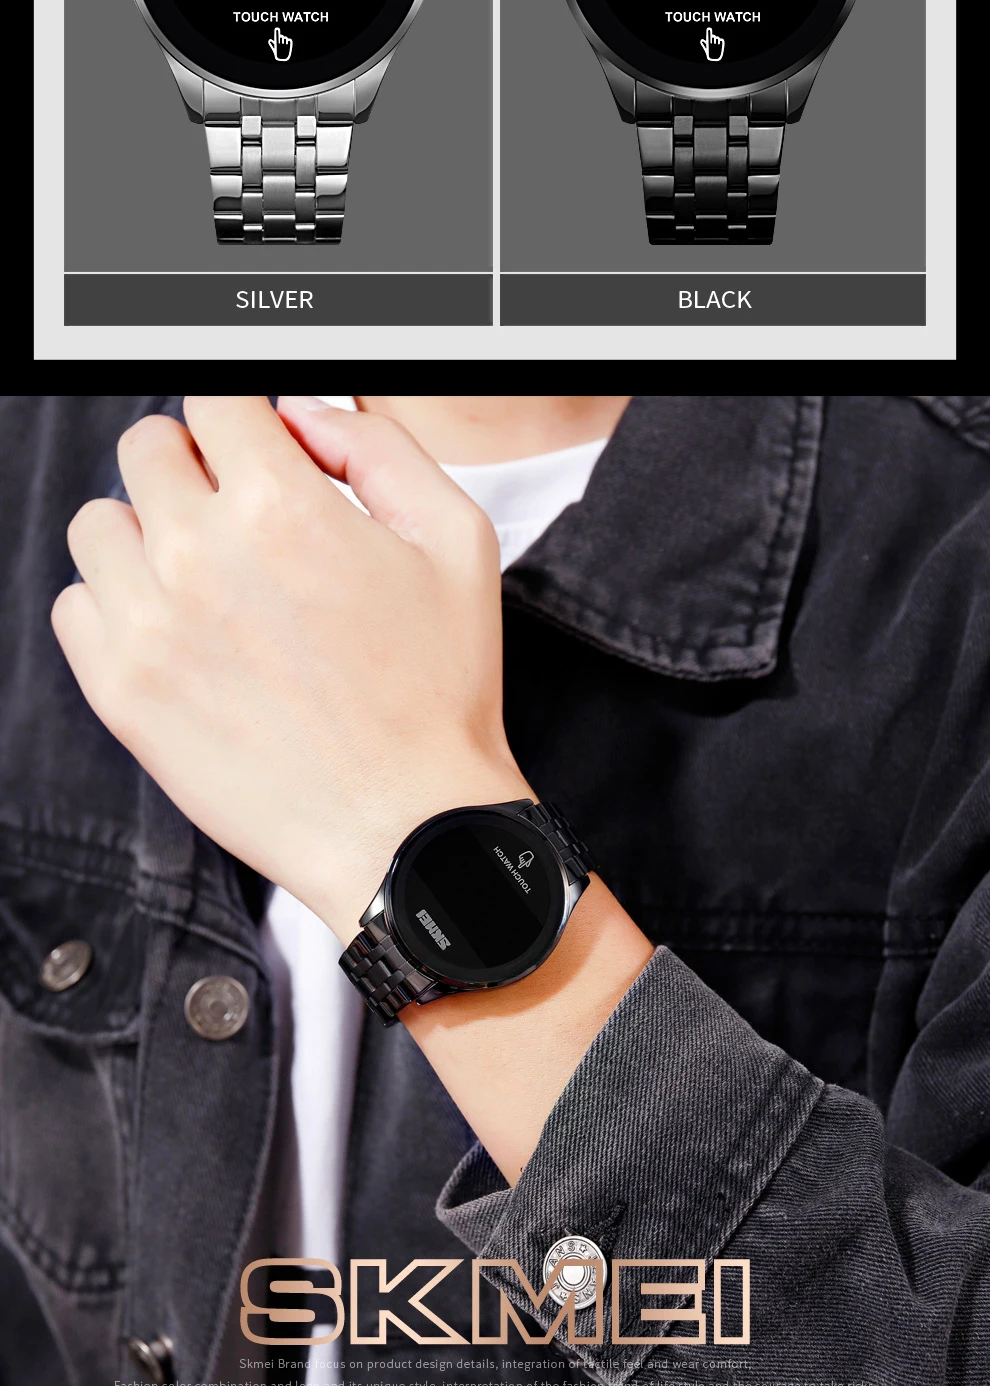 Touch Screen relógios de pulso, marca relógio, moda